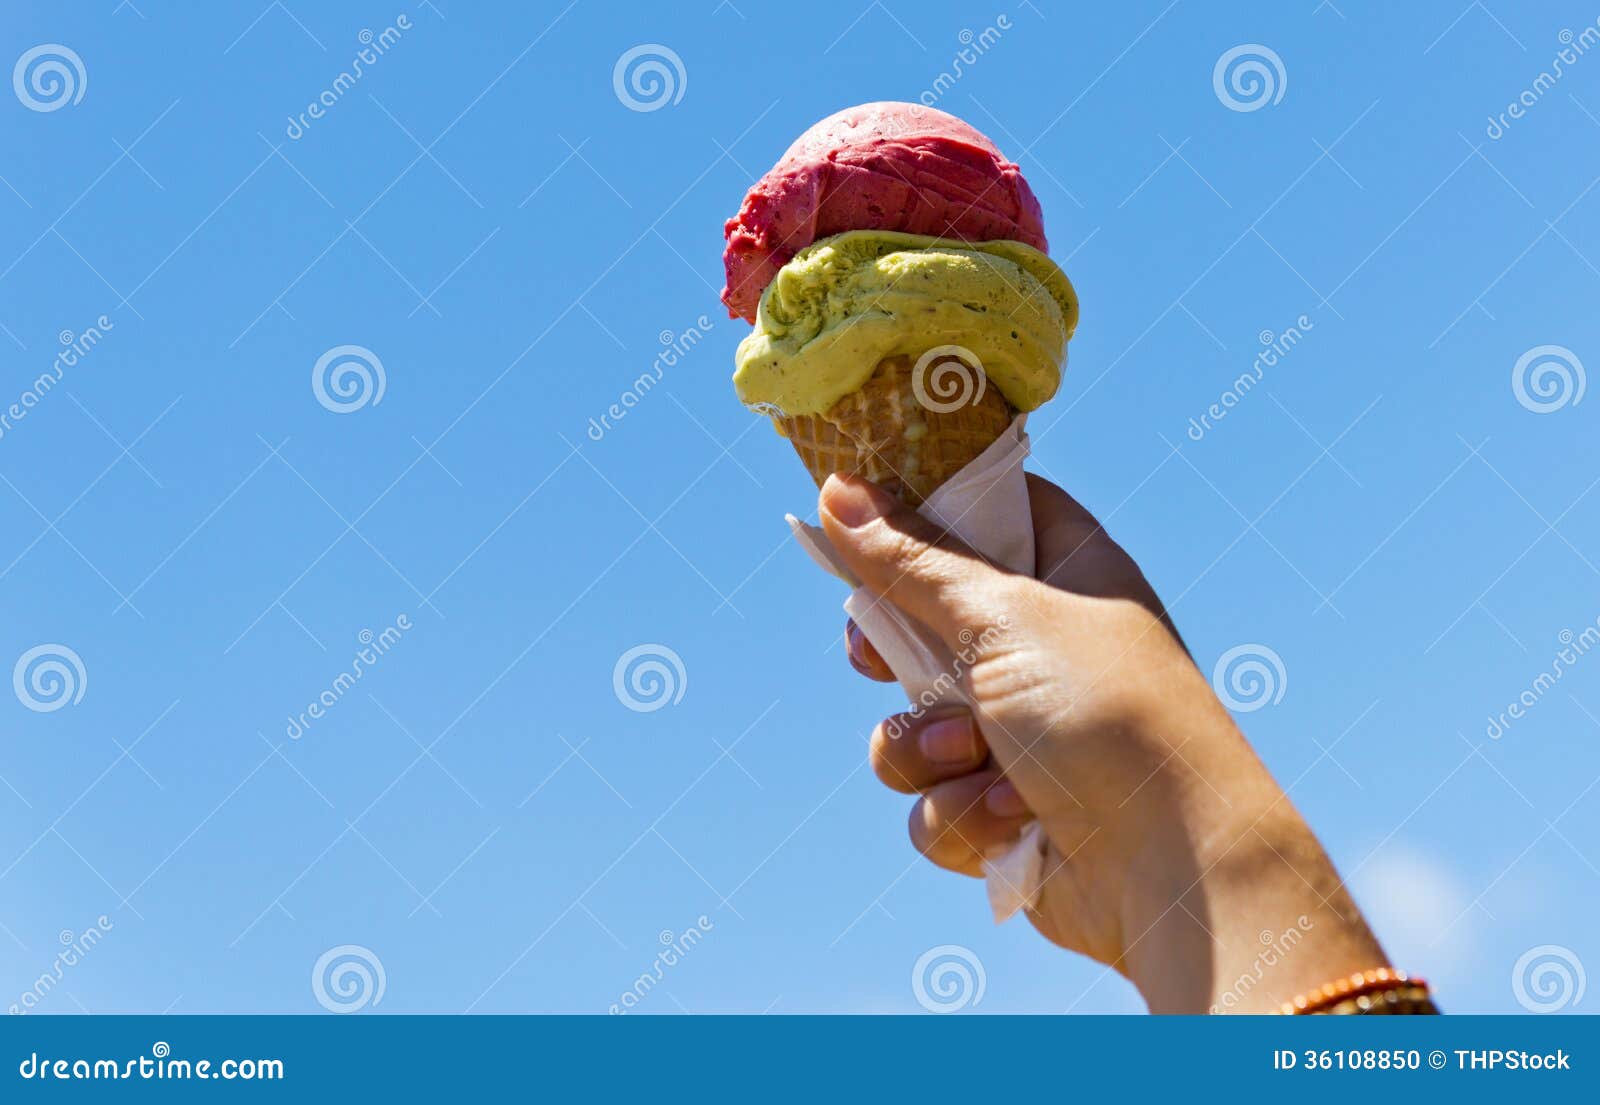 gelati ice cream cone